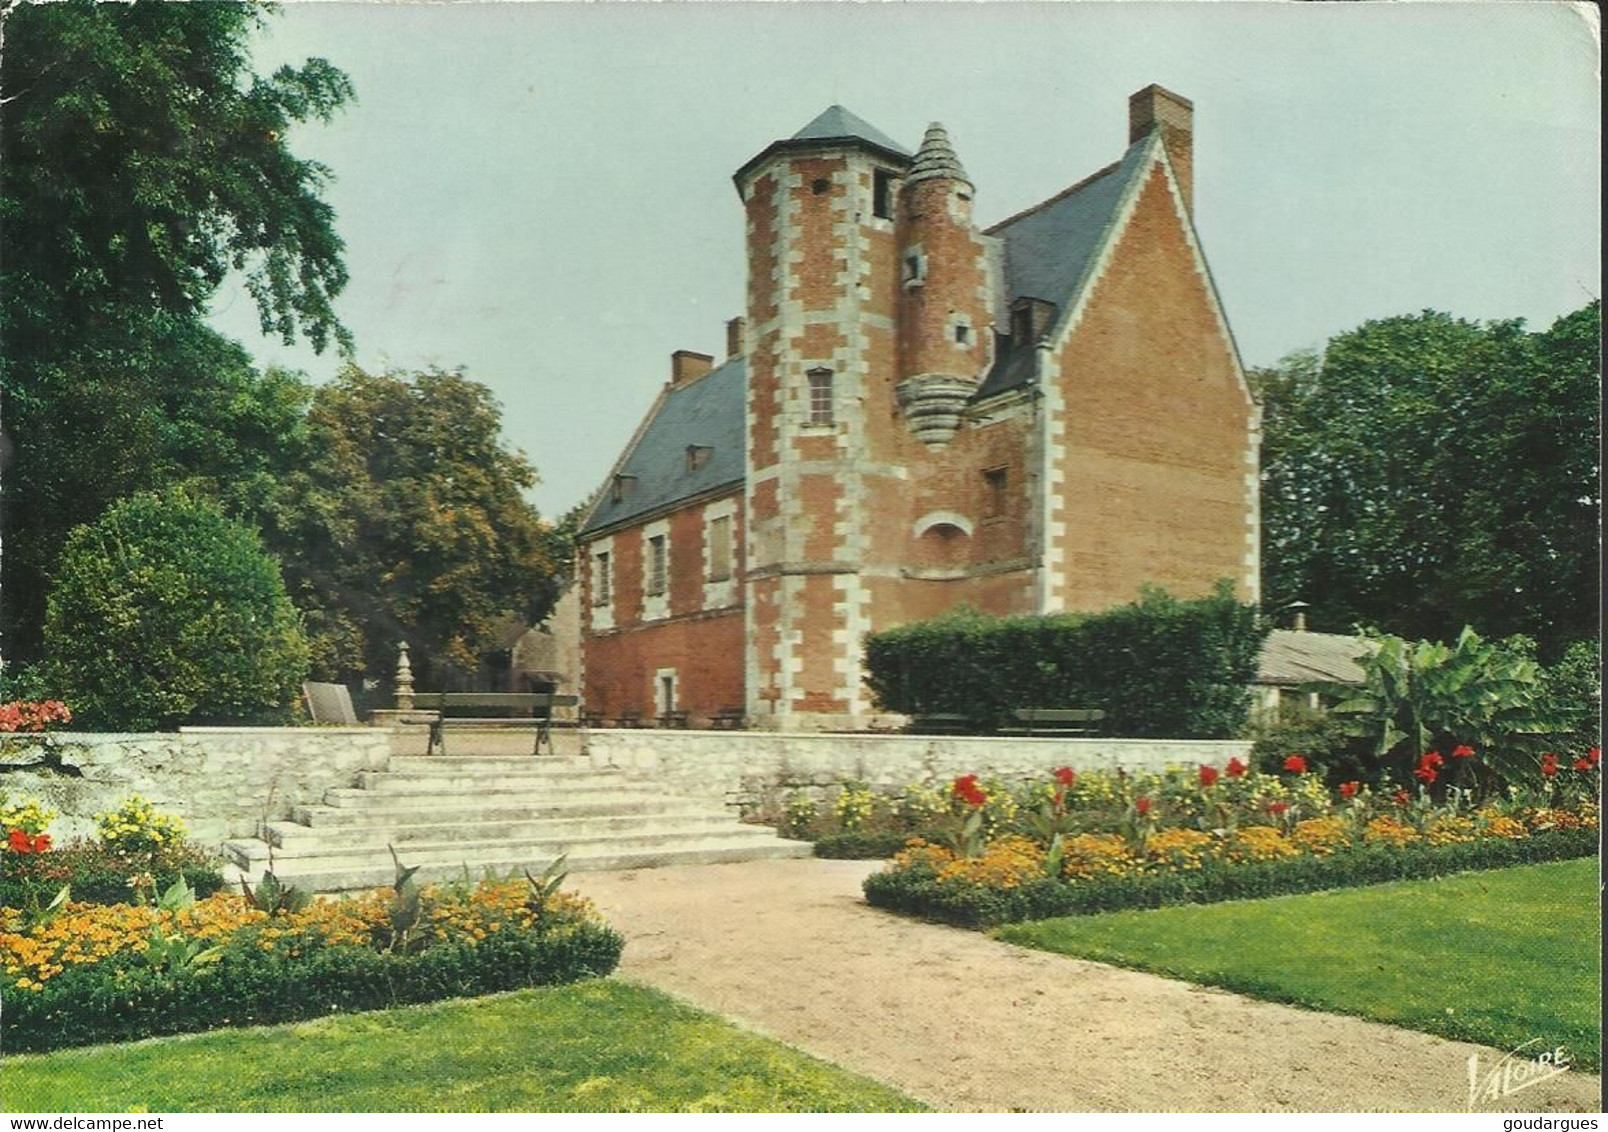 Le Château De Plessis-lès-Tours (XVe Siècle)  Résidence Du Roi Louis XI - (P) - La Riche